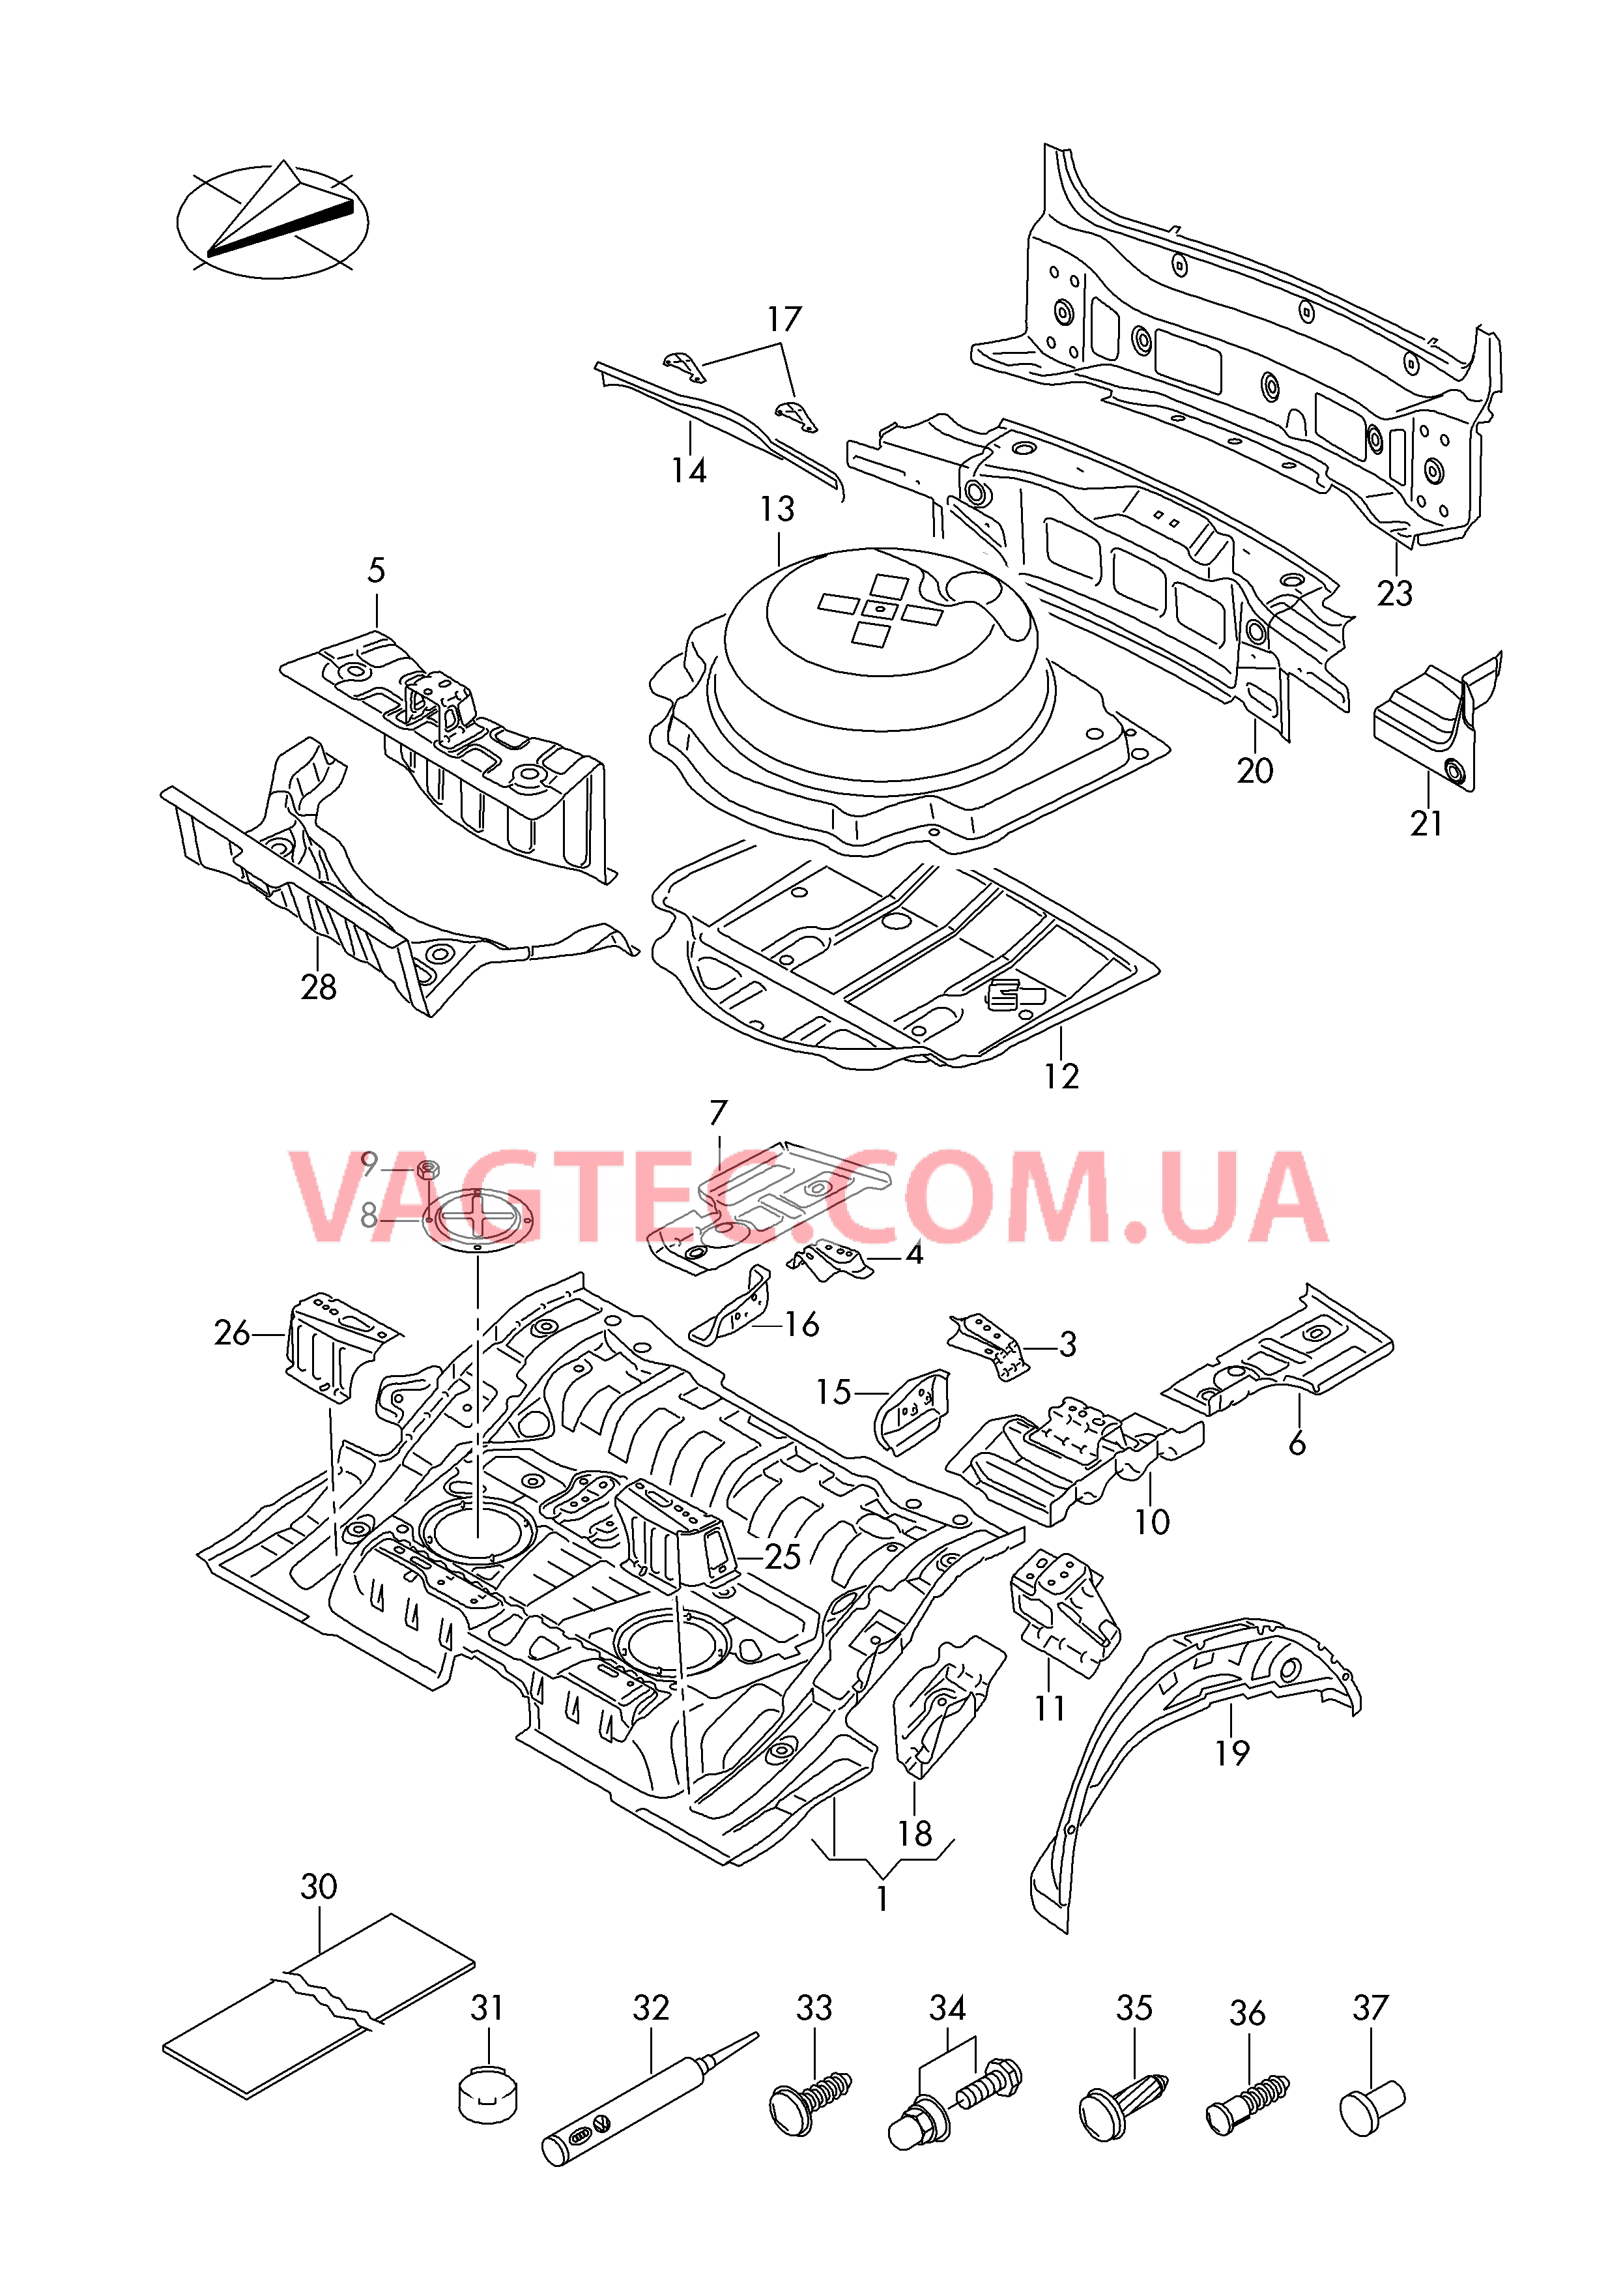 Детали нижней части кузова Задняя панель  для VOLKSWAGEN Touareg 2017